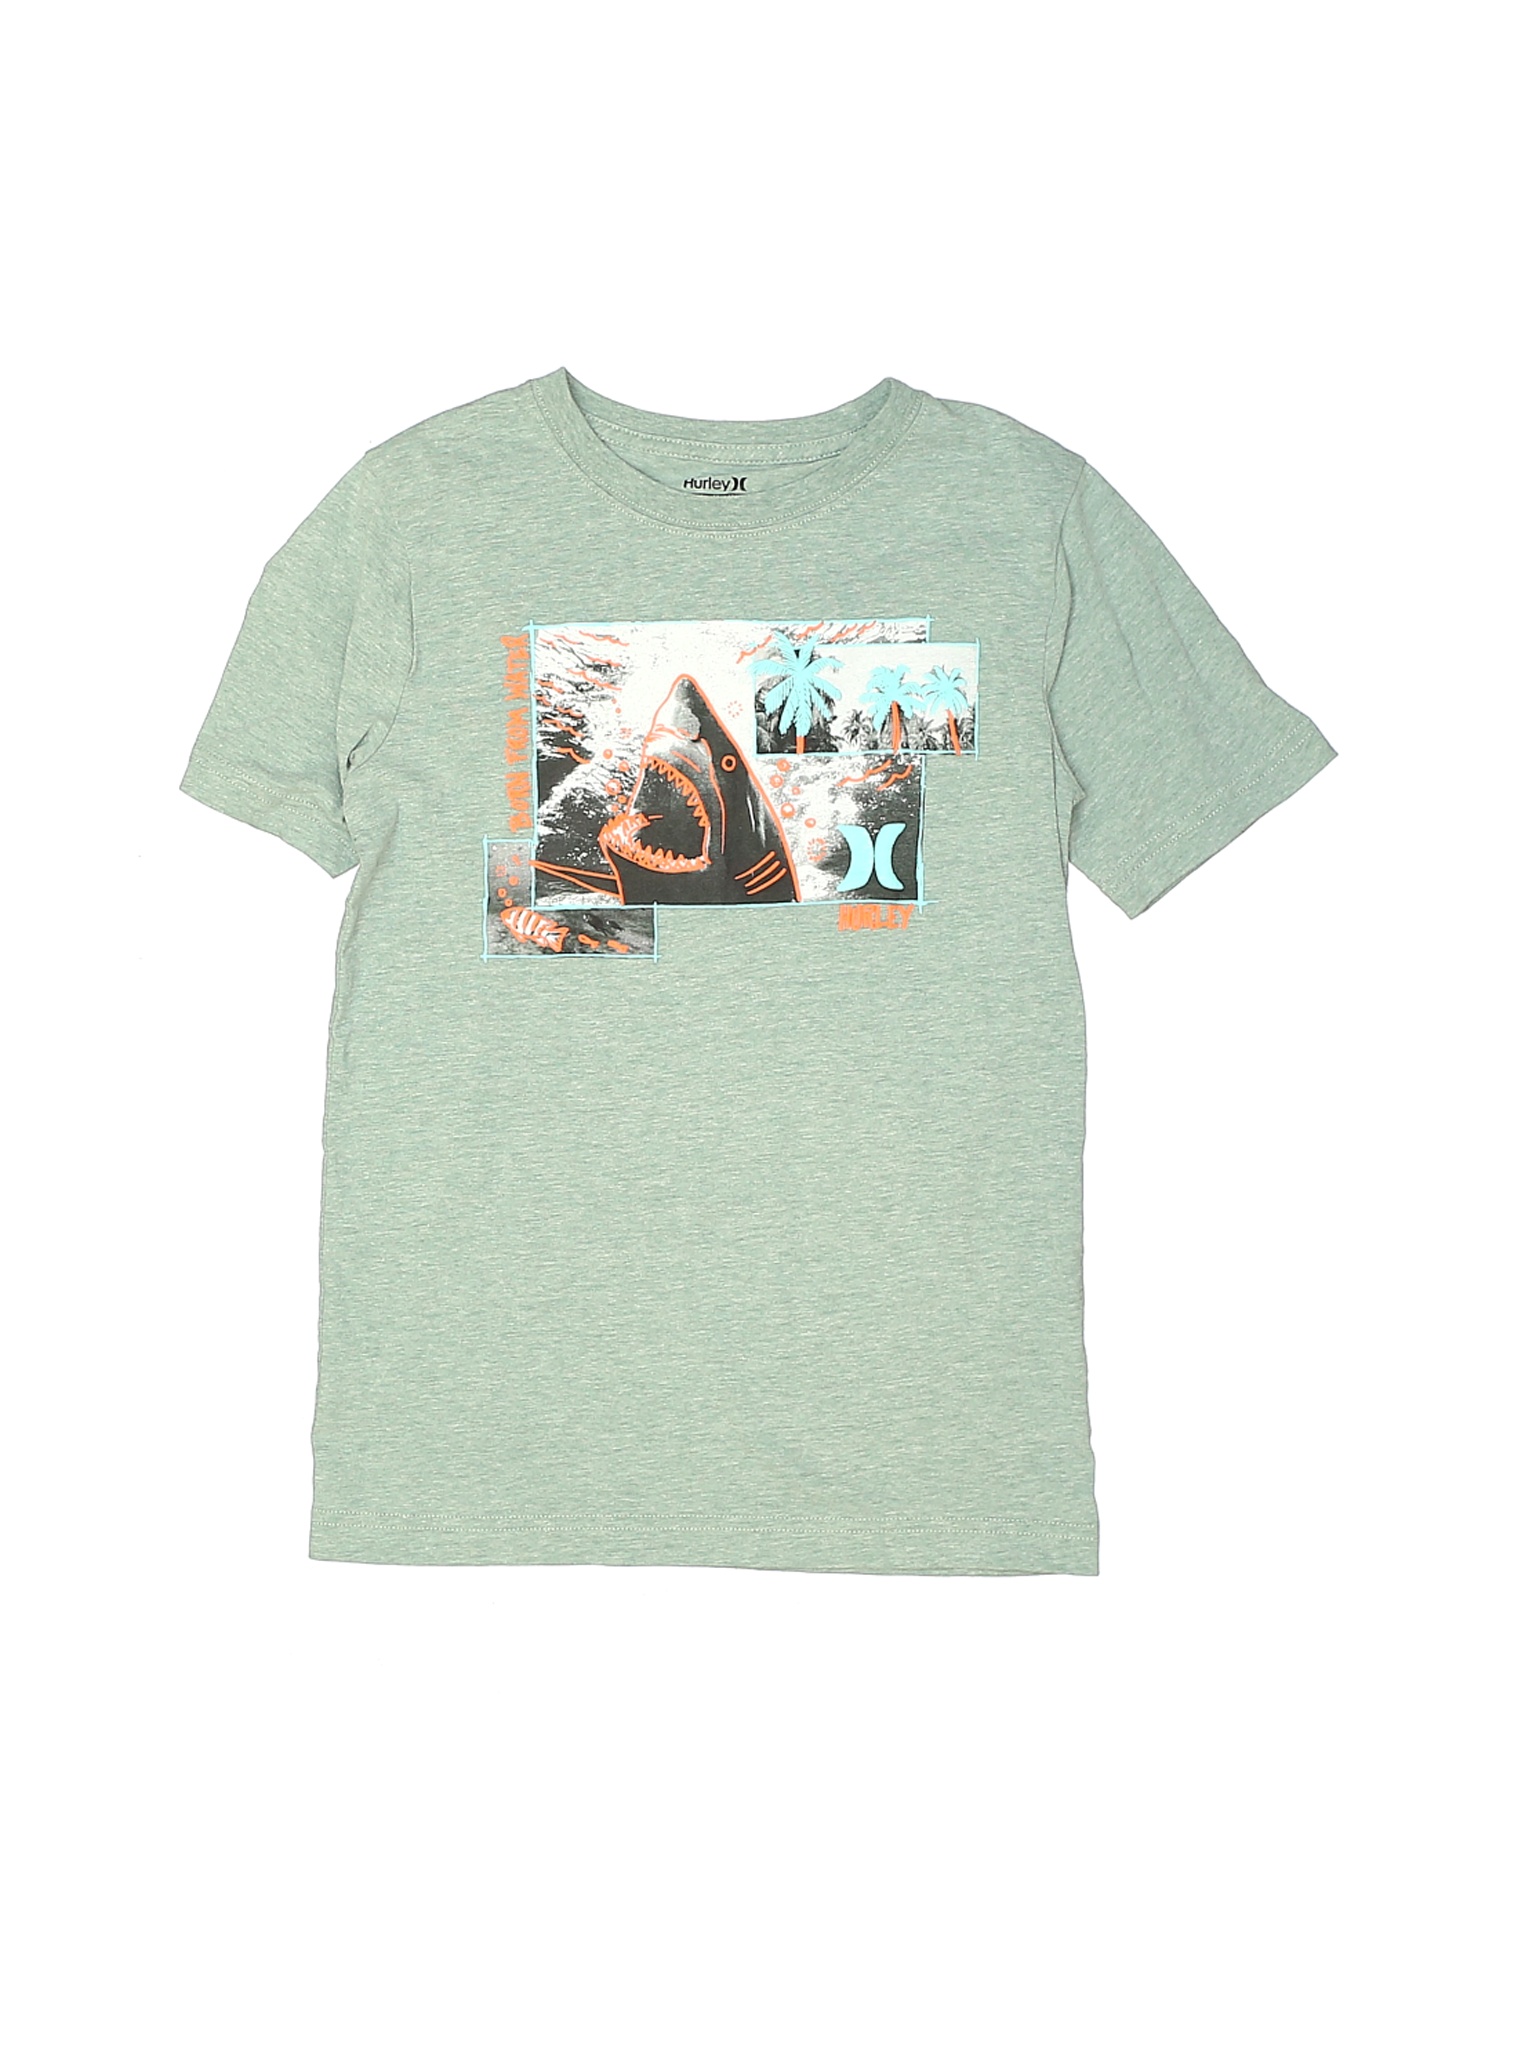 Hurley Boys Green Short Sleeve T-Shirt Medium kids | eBay